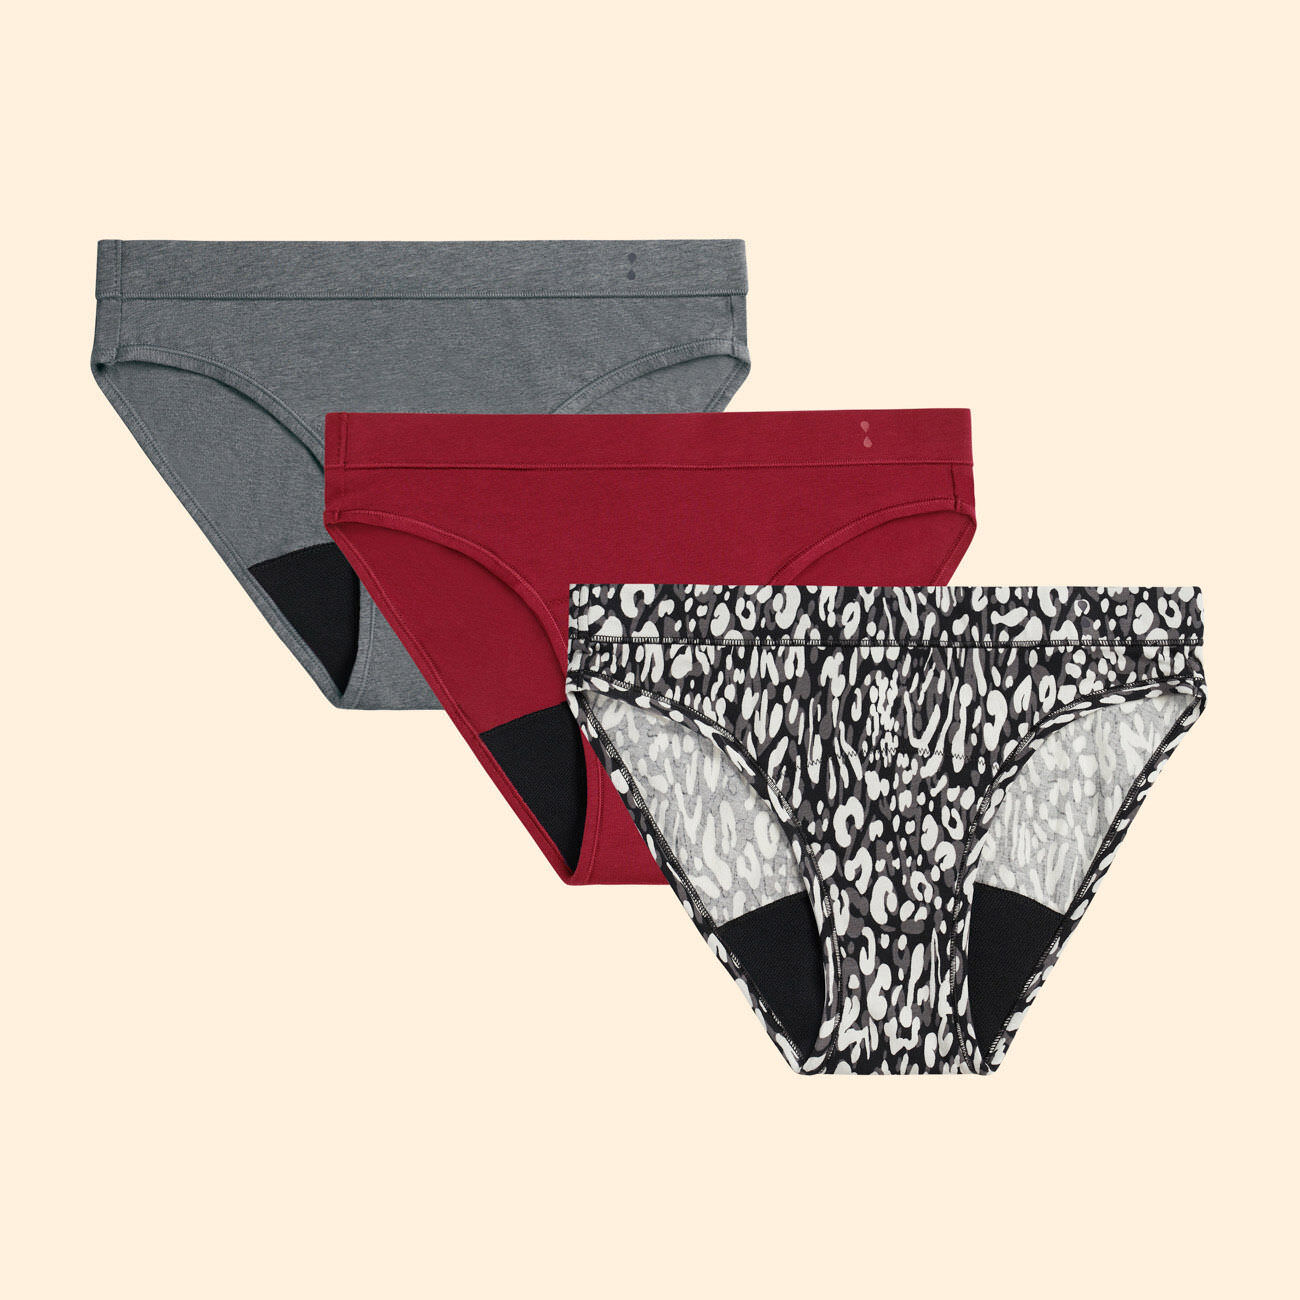 Thinx for All™ Women's Briefs Period Underwear, Super Absorbency, Black 